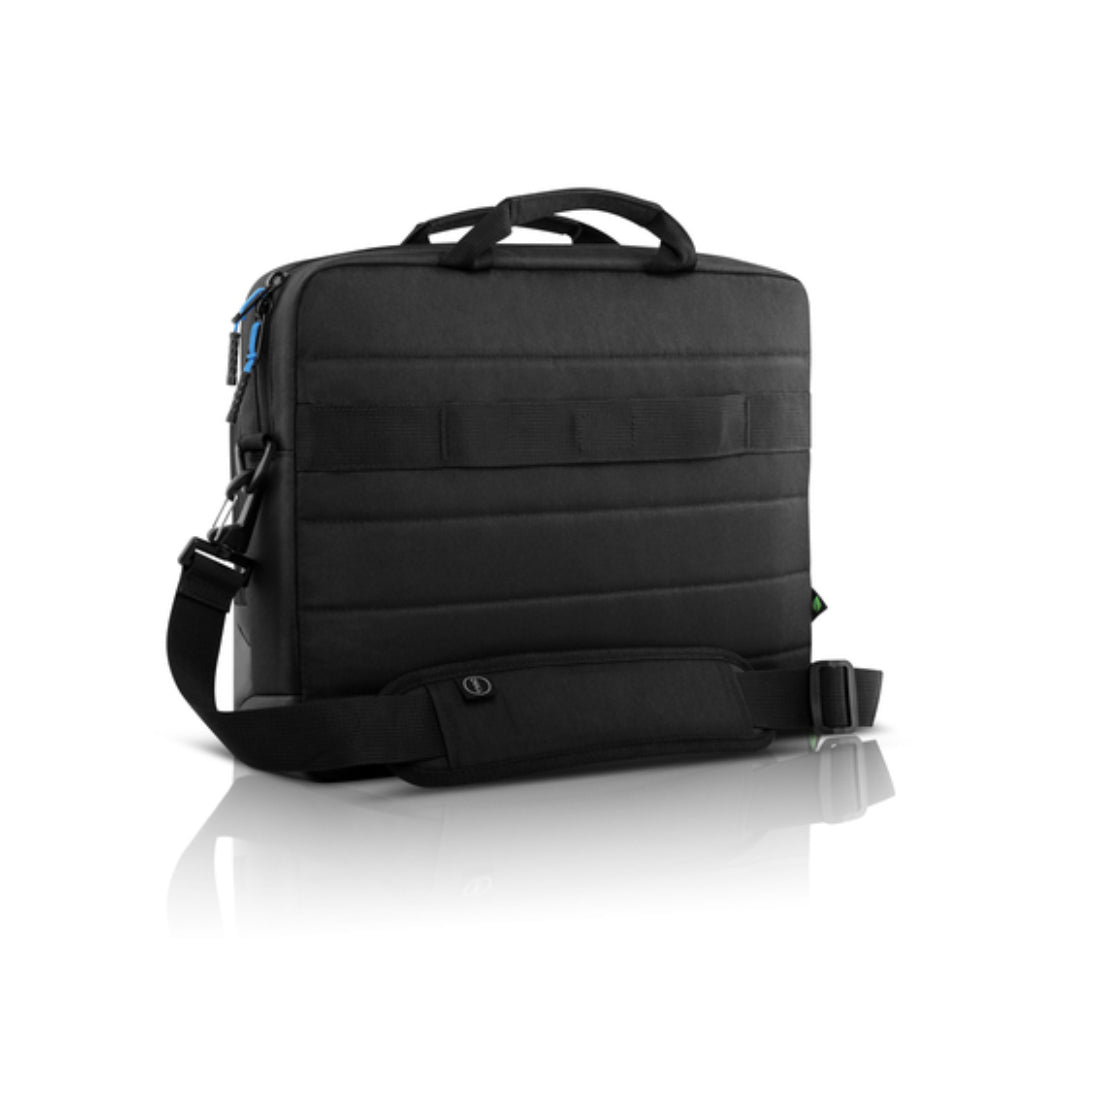 Dell PO1520CS Pro Slim Briefcase - Black - حقيبة حاسوب محمول - Store 974 | ستور ٩٧٤